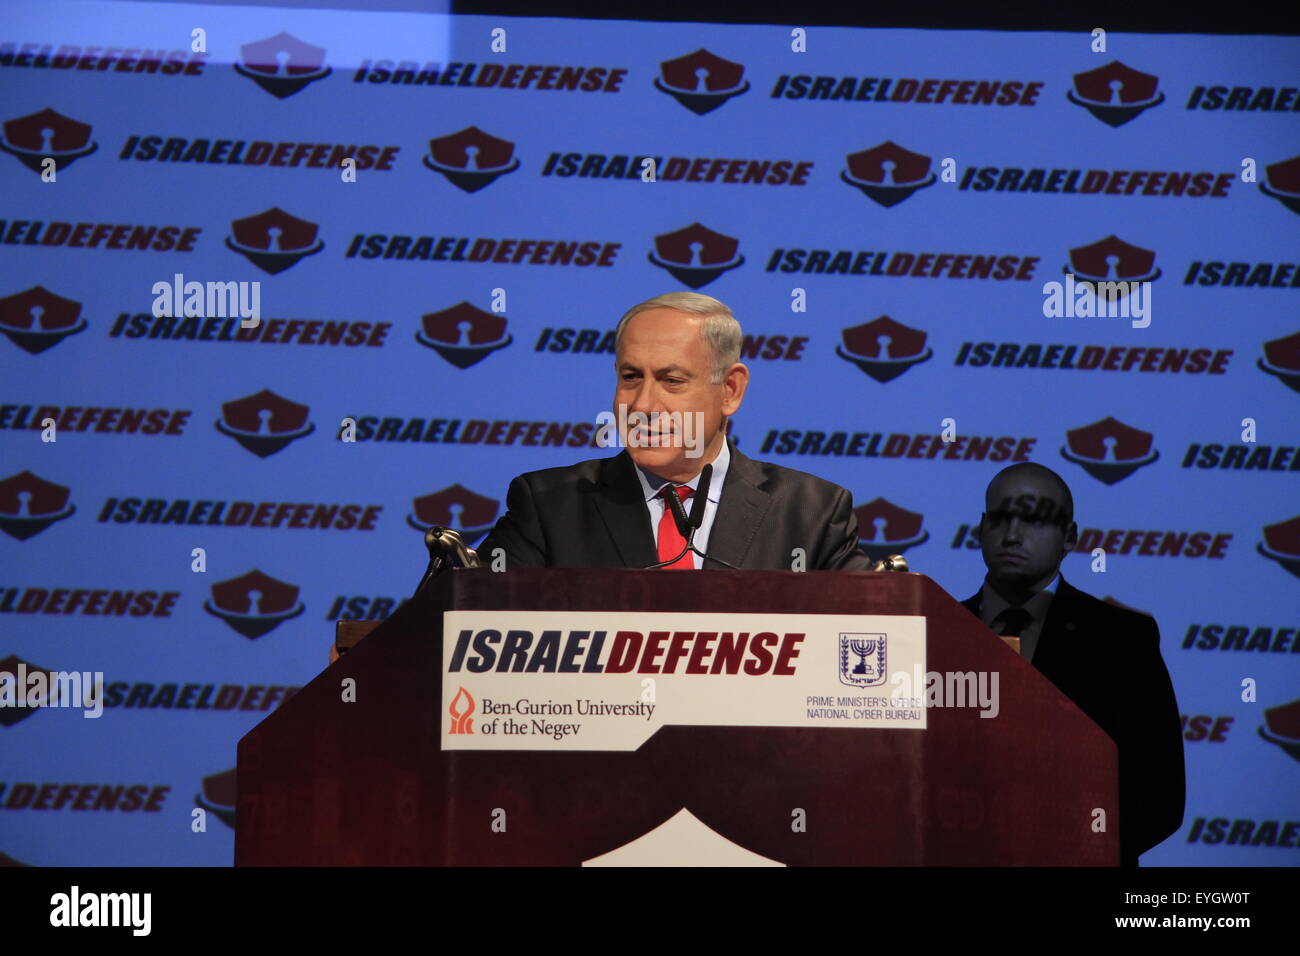 PM israelí Benjamin Netanyahu abre CyberTech 2014 Exhibition & Conference en Tel Aviv que es atendida por cientos de compañías israelíes e internacionales Foto de stock